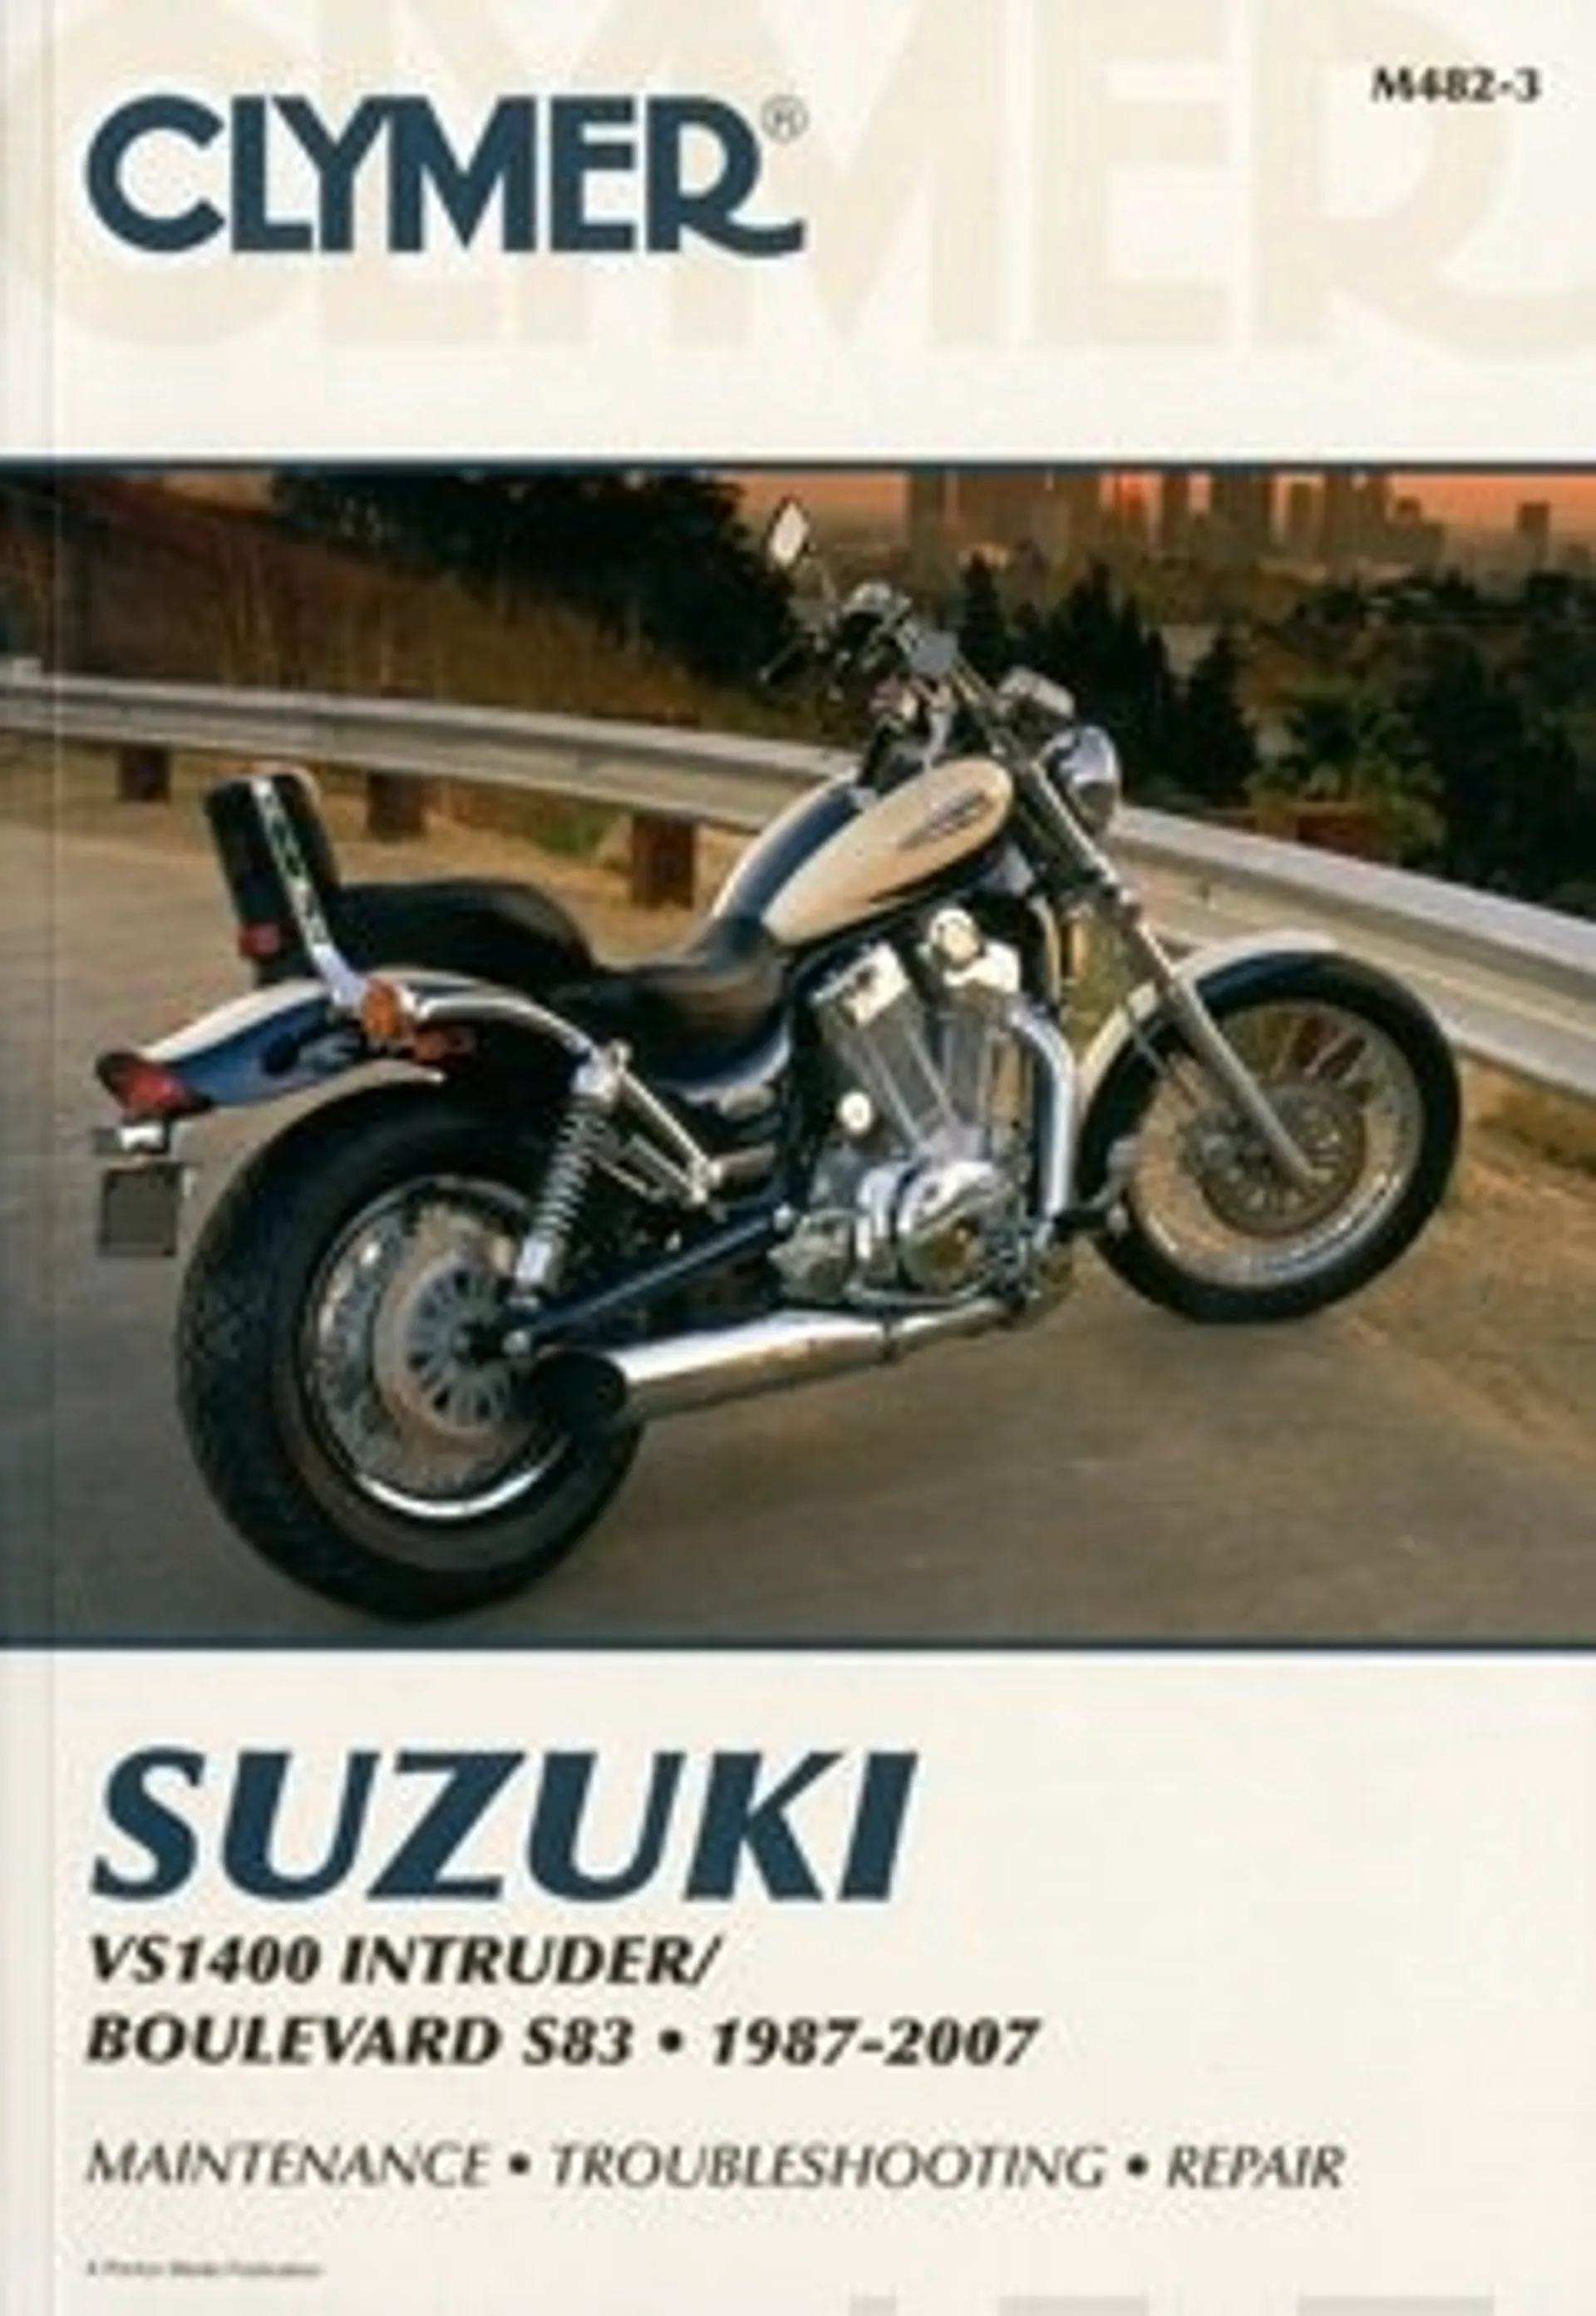 Suzuki VS1400 Intruder/boulevard 1987-2007